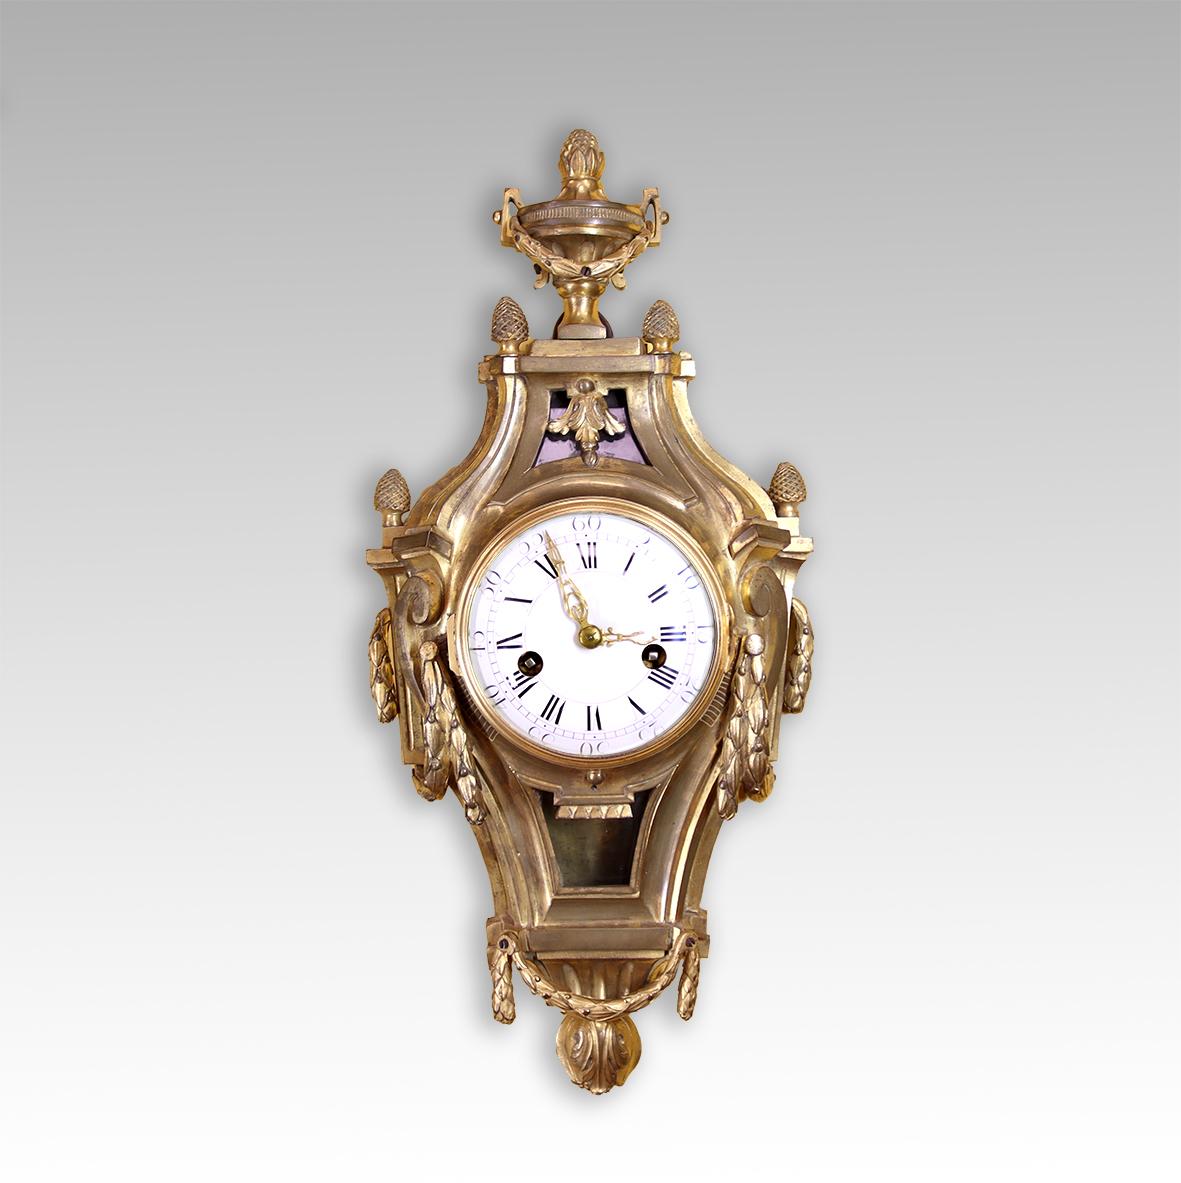 Cette belle petite horloge à cartel date de la fin des années 1760. Ce rare survivant est en excellent état d'origine, le grand mouvement circulaire de huit jours frappe les heures sur une cloche, le pendule ayant une suspension en soie.

Cette